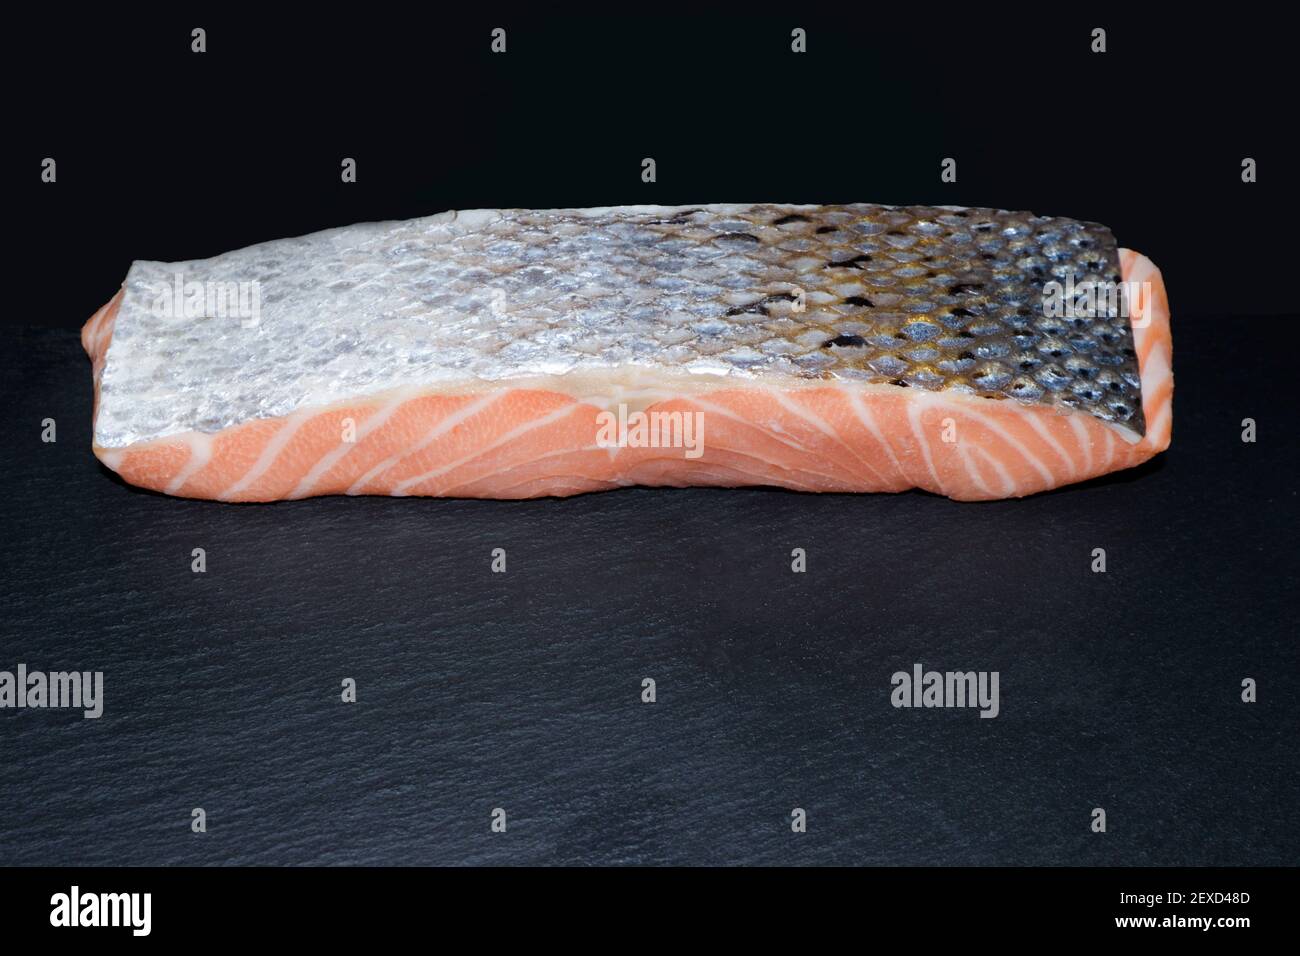 Raw salmon Stock Photo